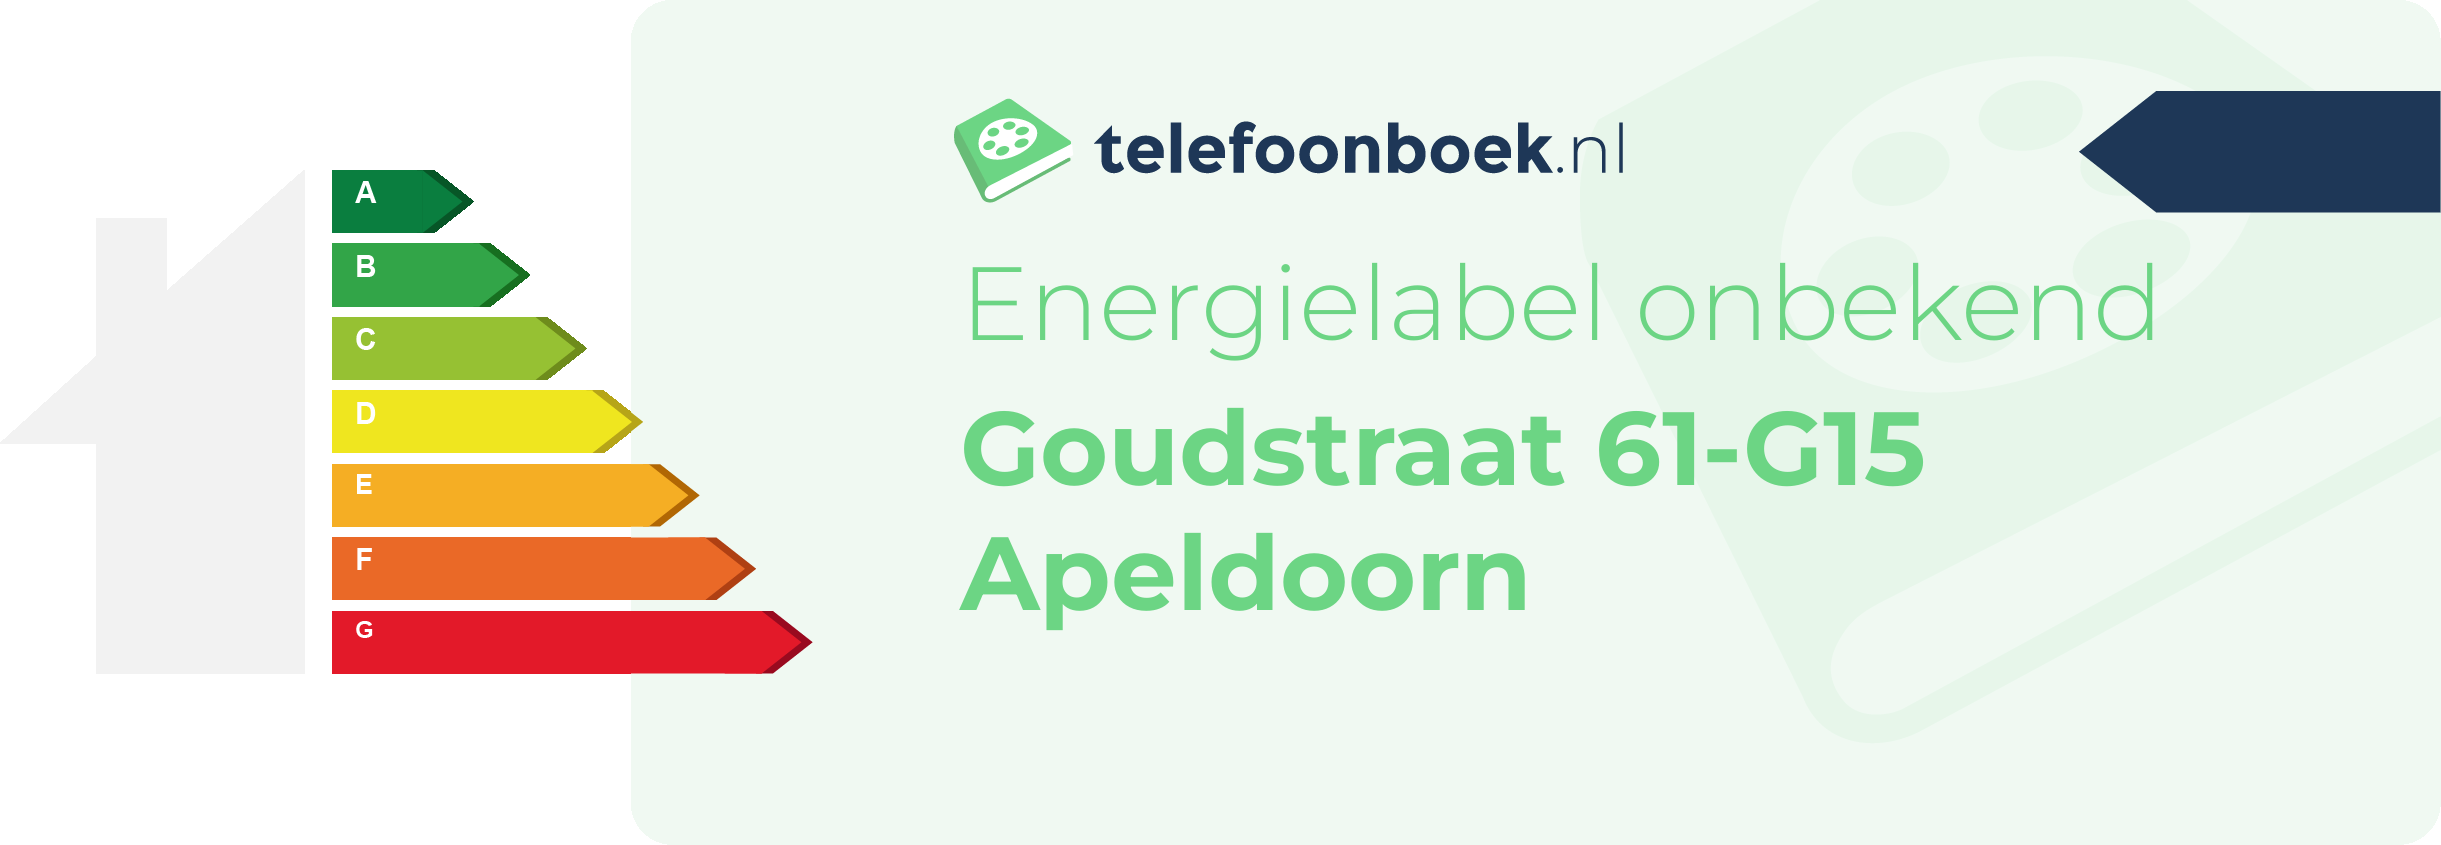 Energielabel Goudstraat 61-G15 Apeldoorn